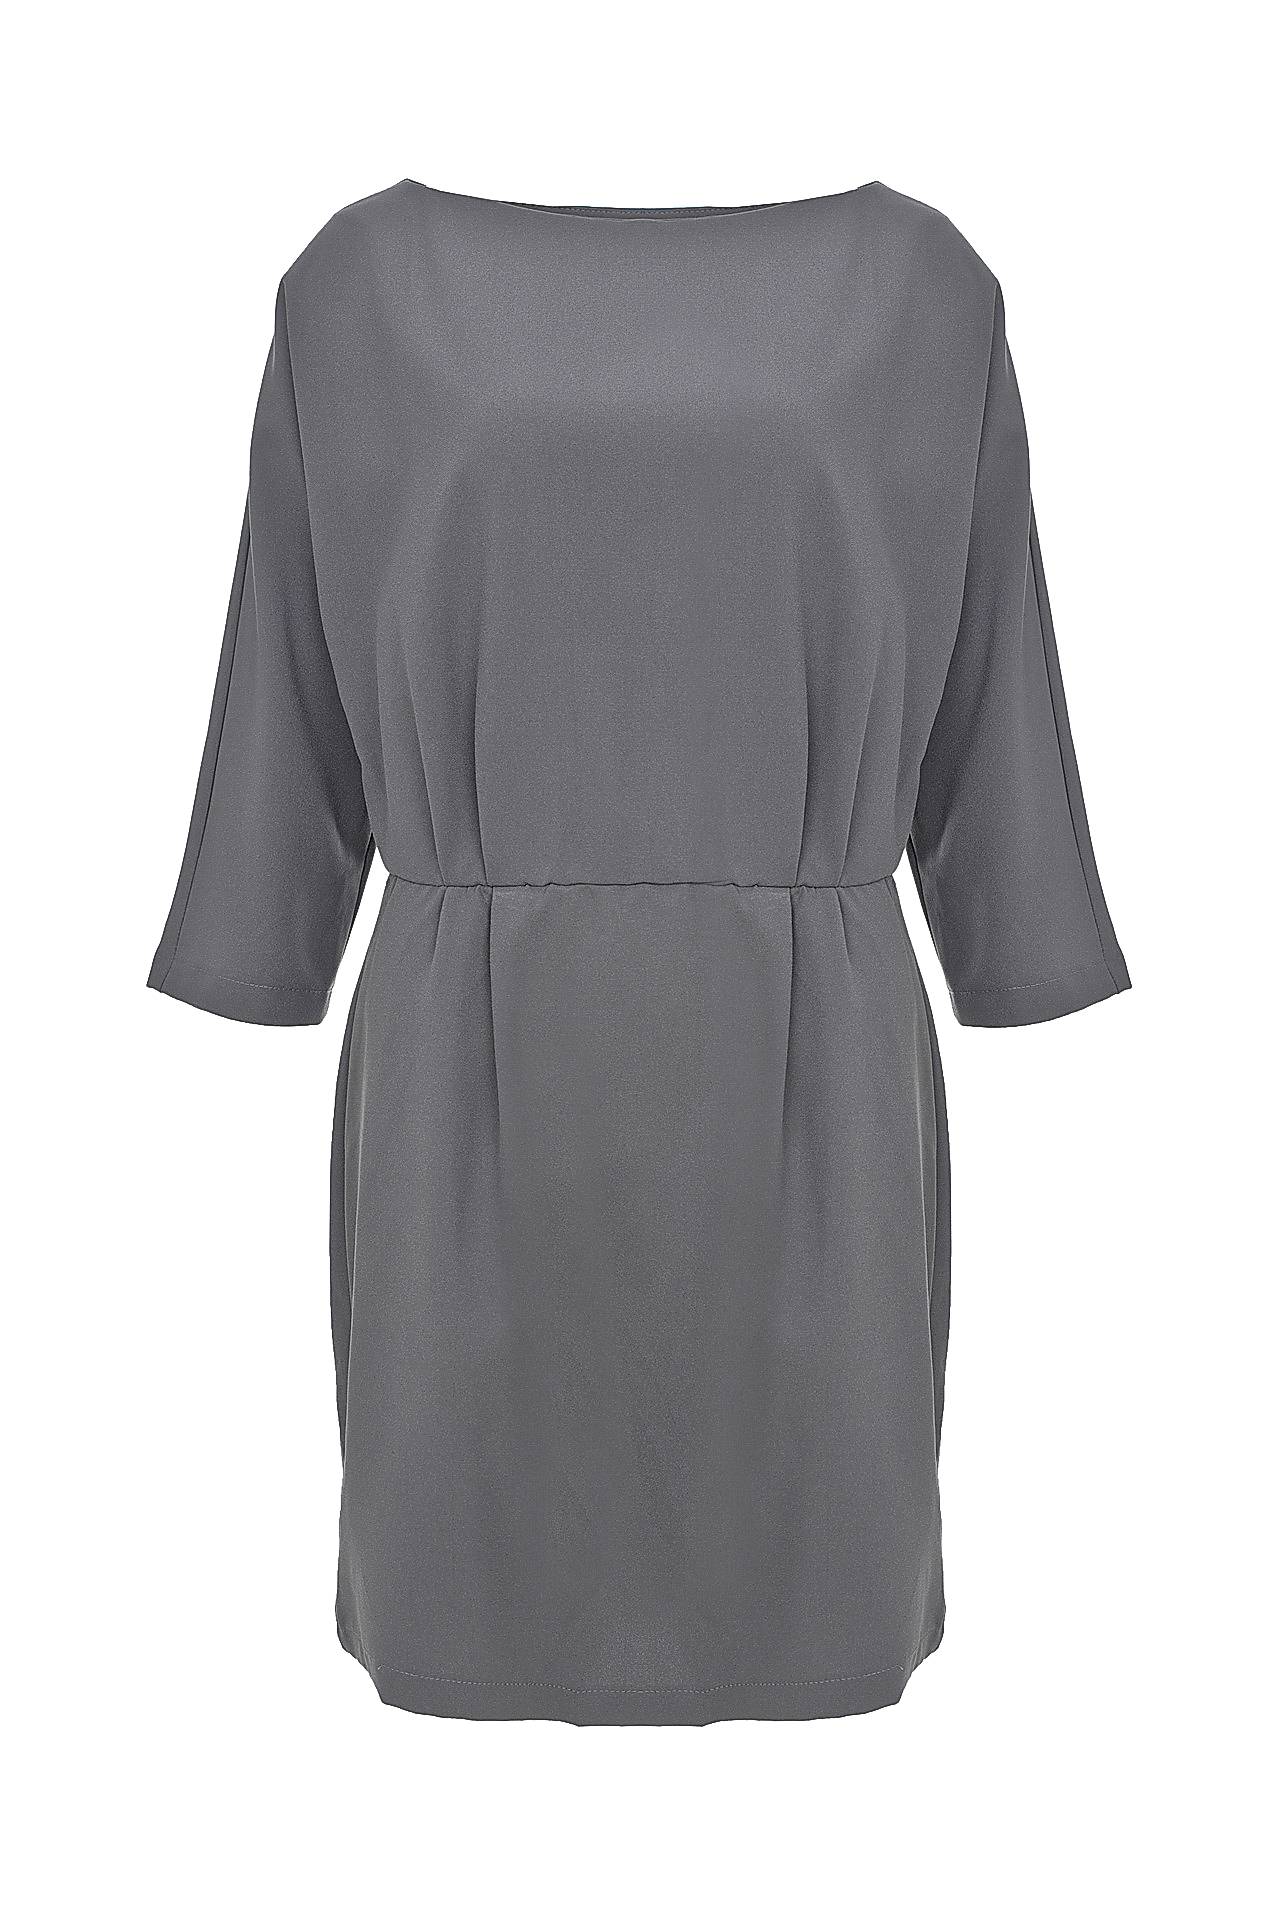 Одежда женская Платье VICOLO (TD0005/13.1). Купить за 4450 руб.